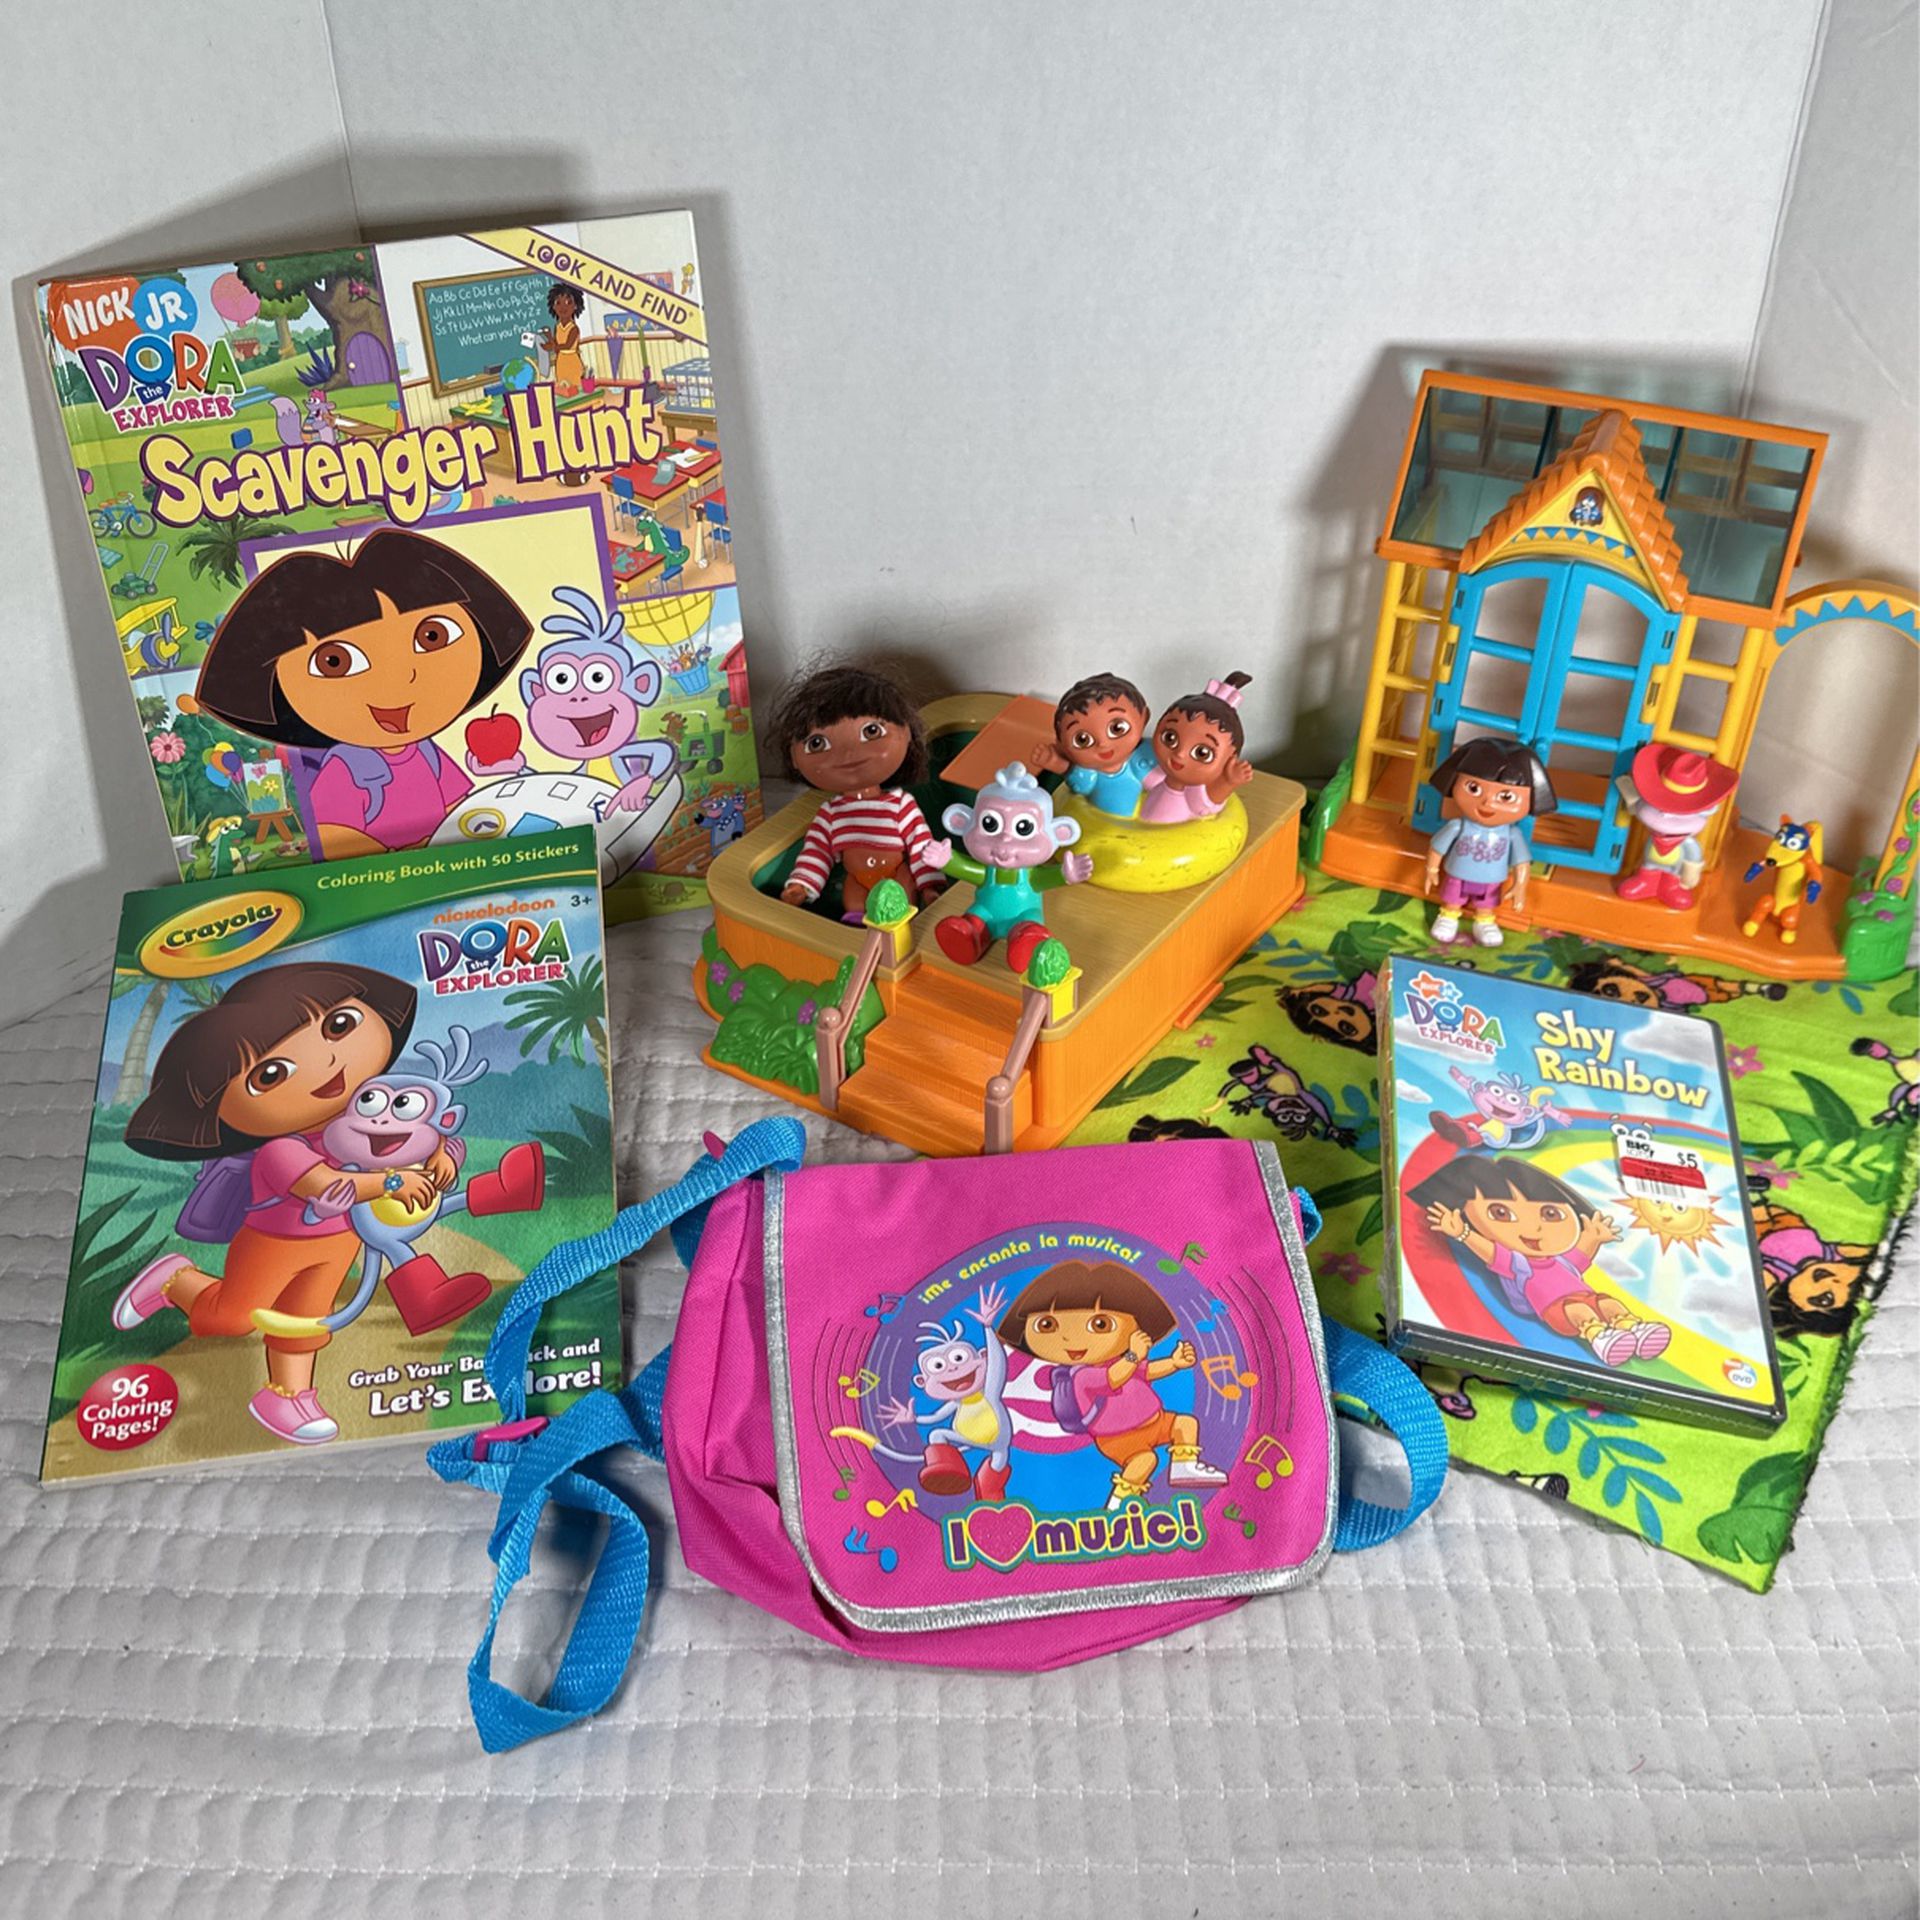 Dora The Explorer Toys 